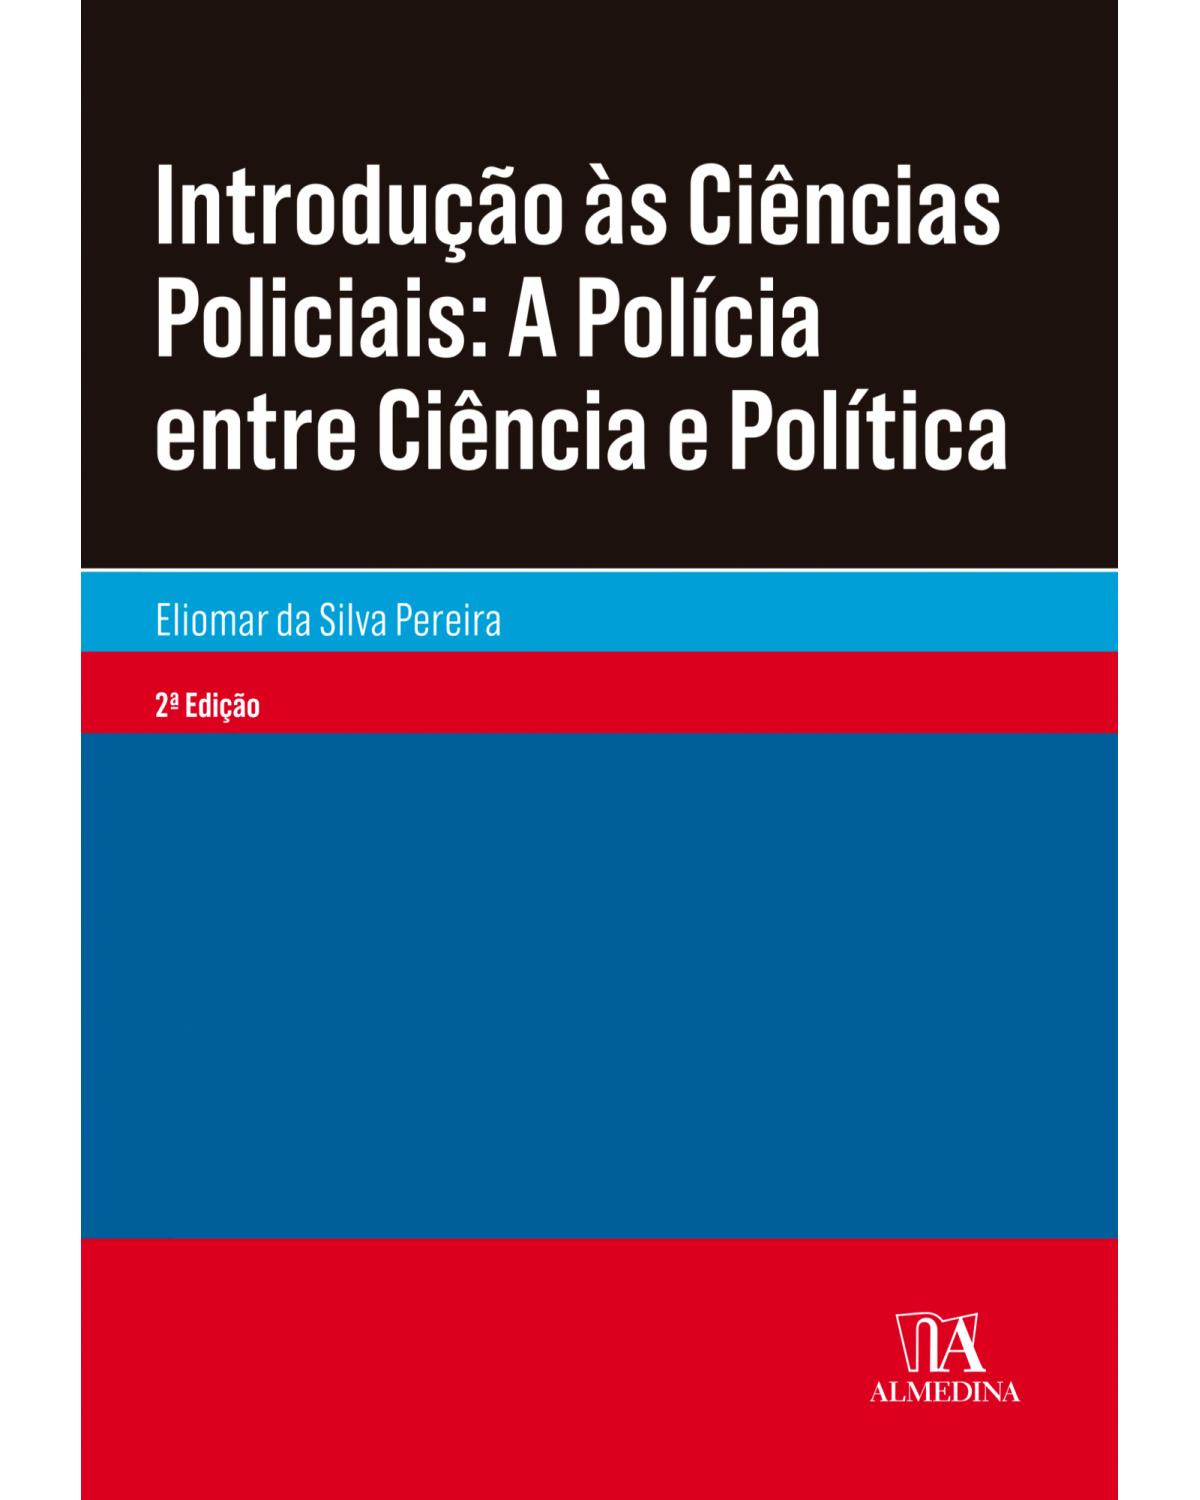 Introdução às ciências policiais - a polícia entre ciência e política - 2ª Edição | 2019